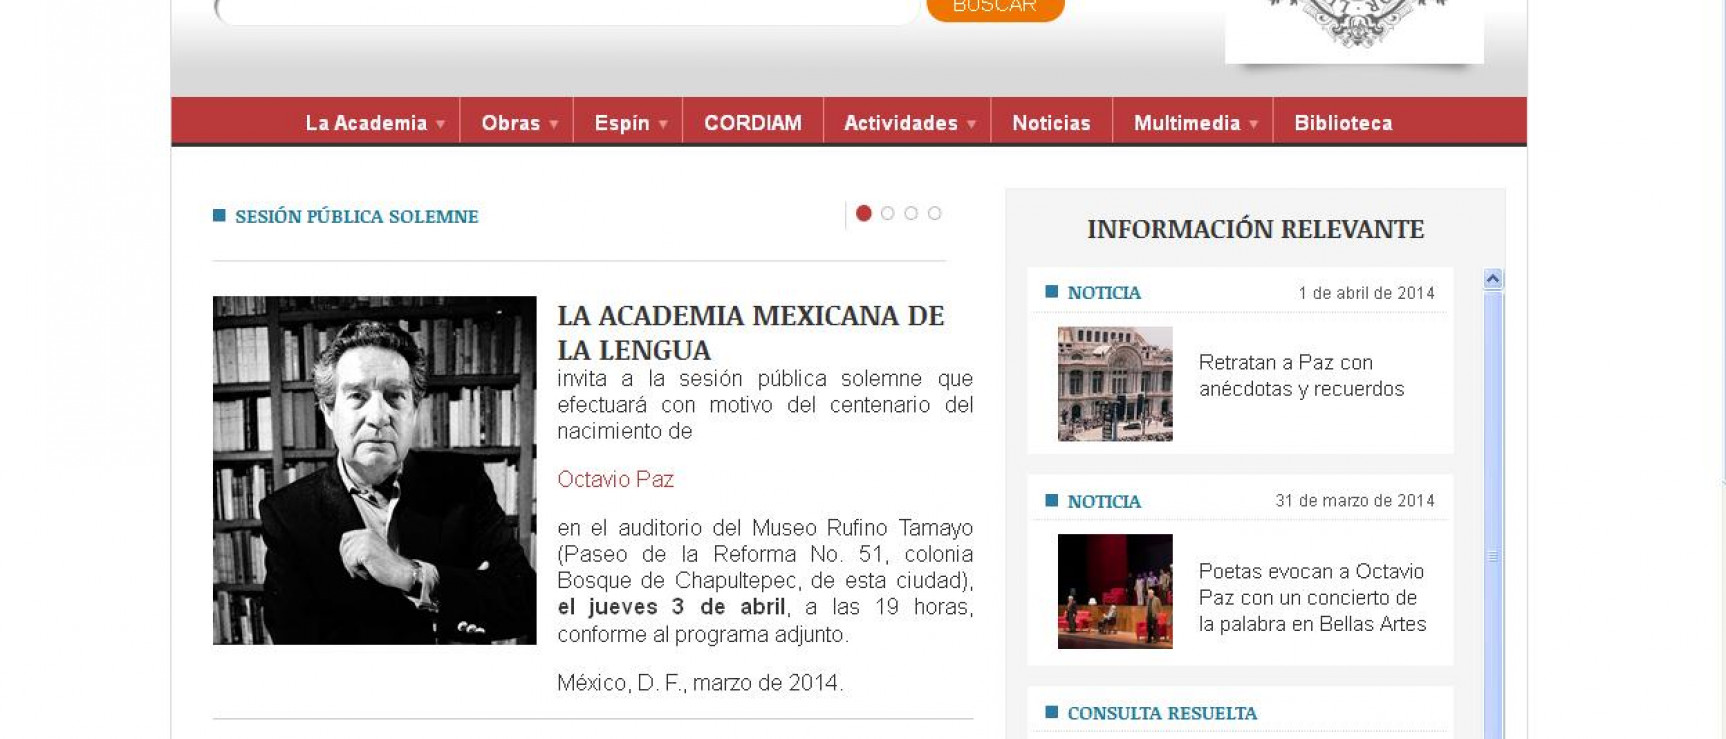 Nueva página web de la Academia Mexicana de la Lengua. http://www.academia.org.mx/